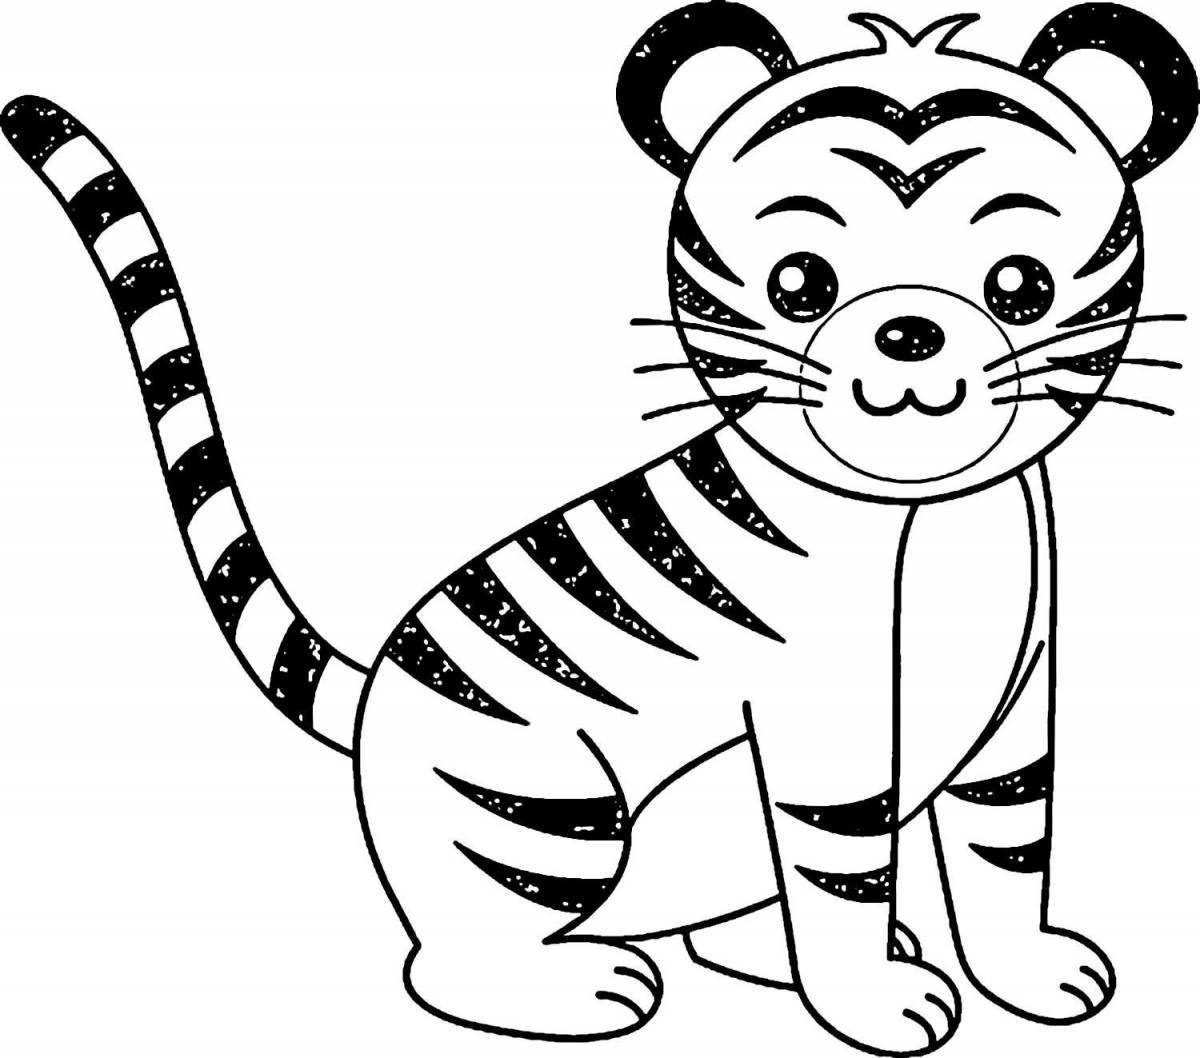 Бесплатные раскраски тигр. Распечатать раскраски бесплатно и скачать раскраски онлайн.